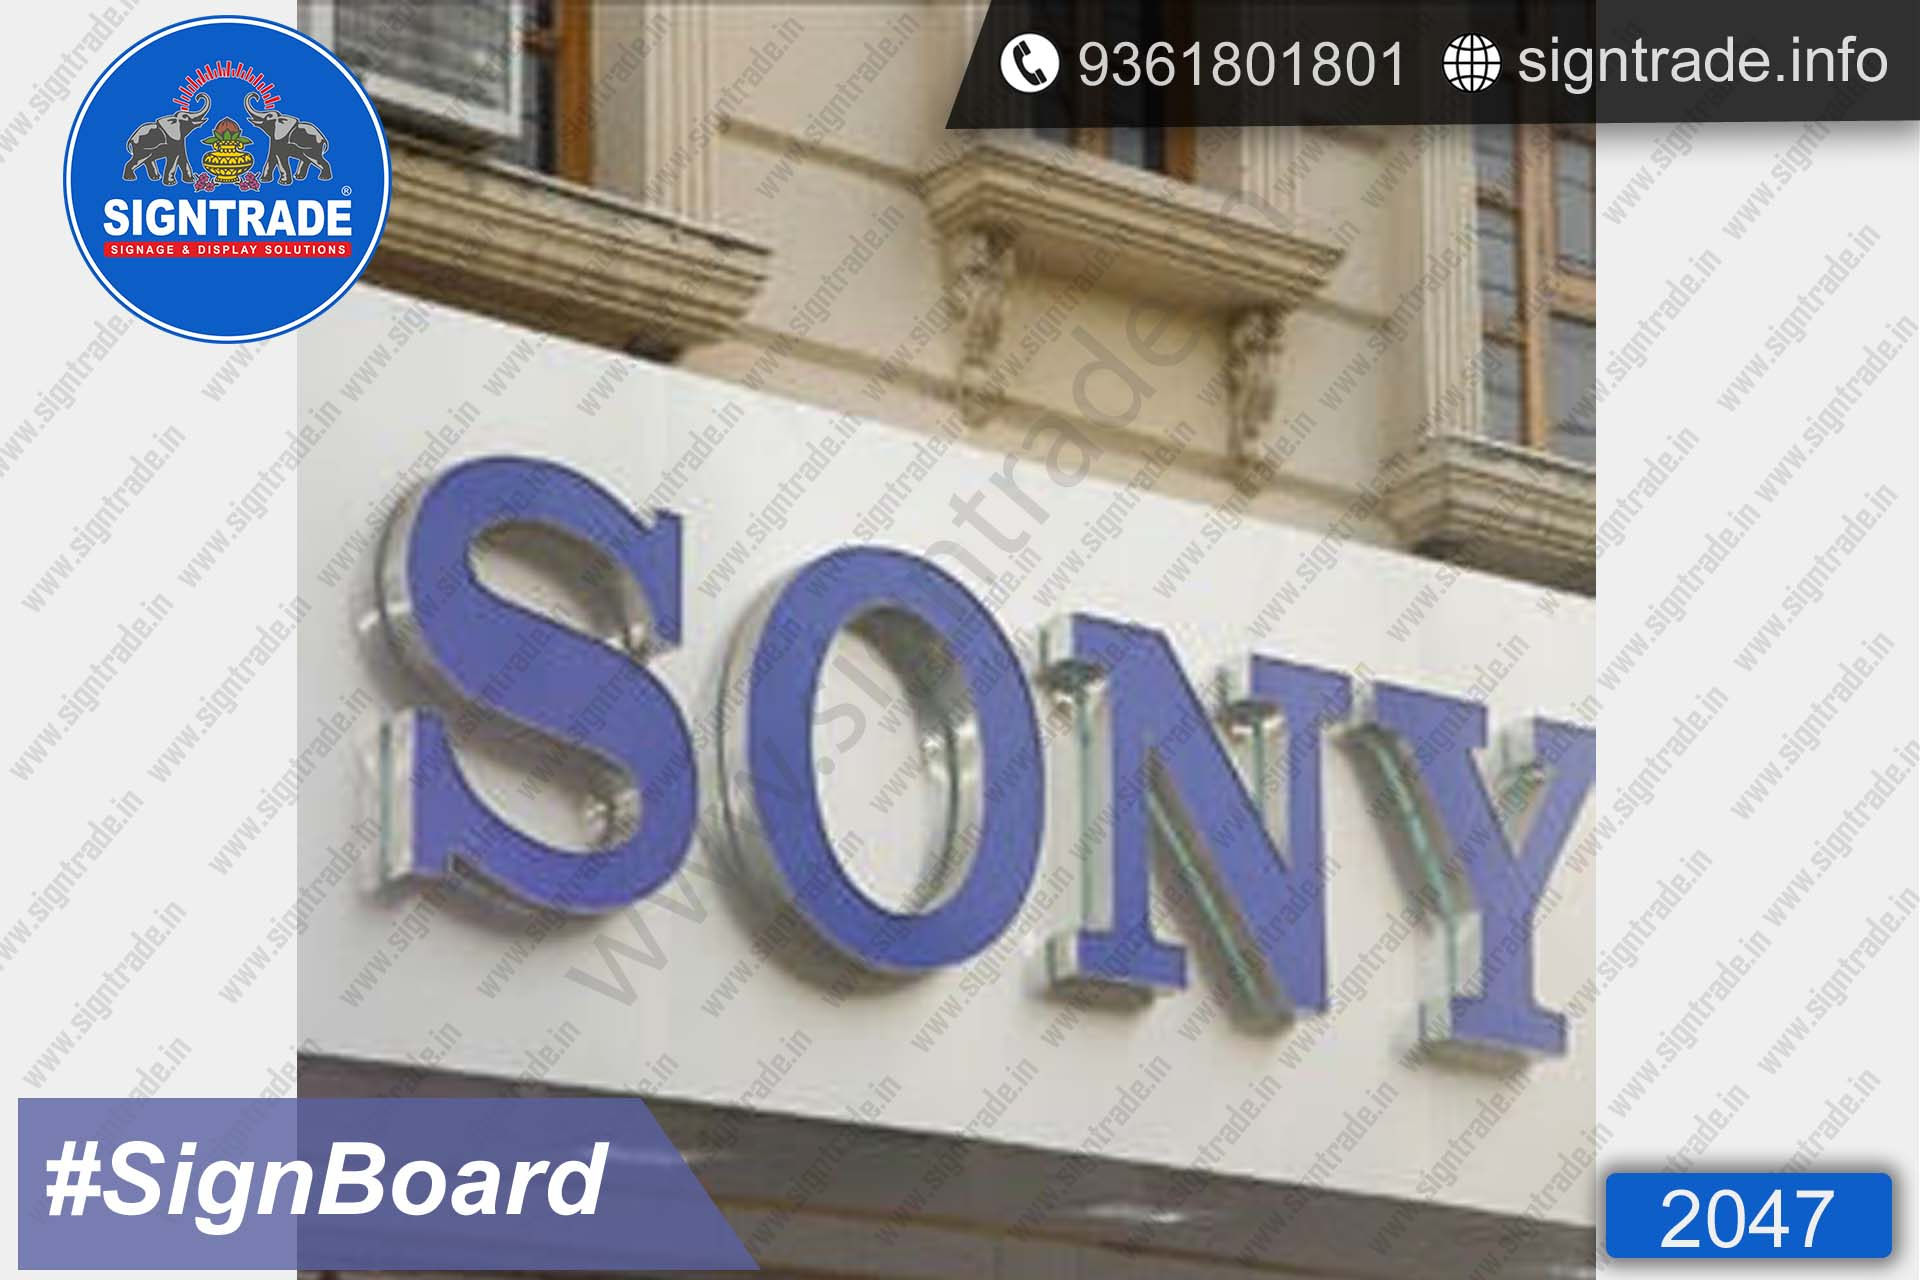 Sony Signboard